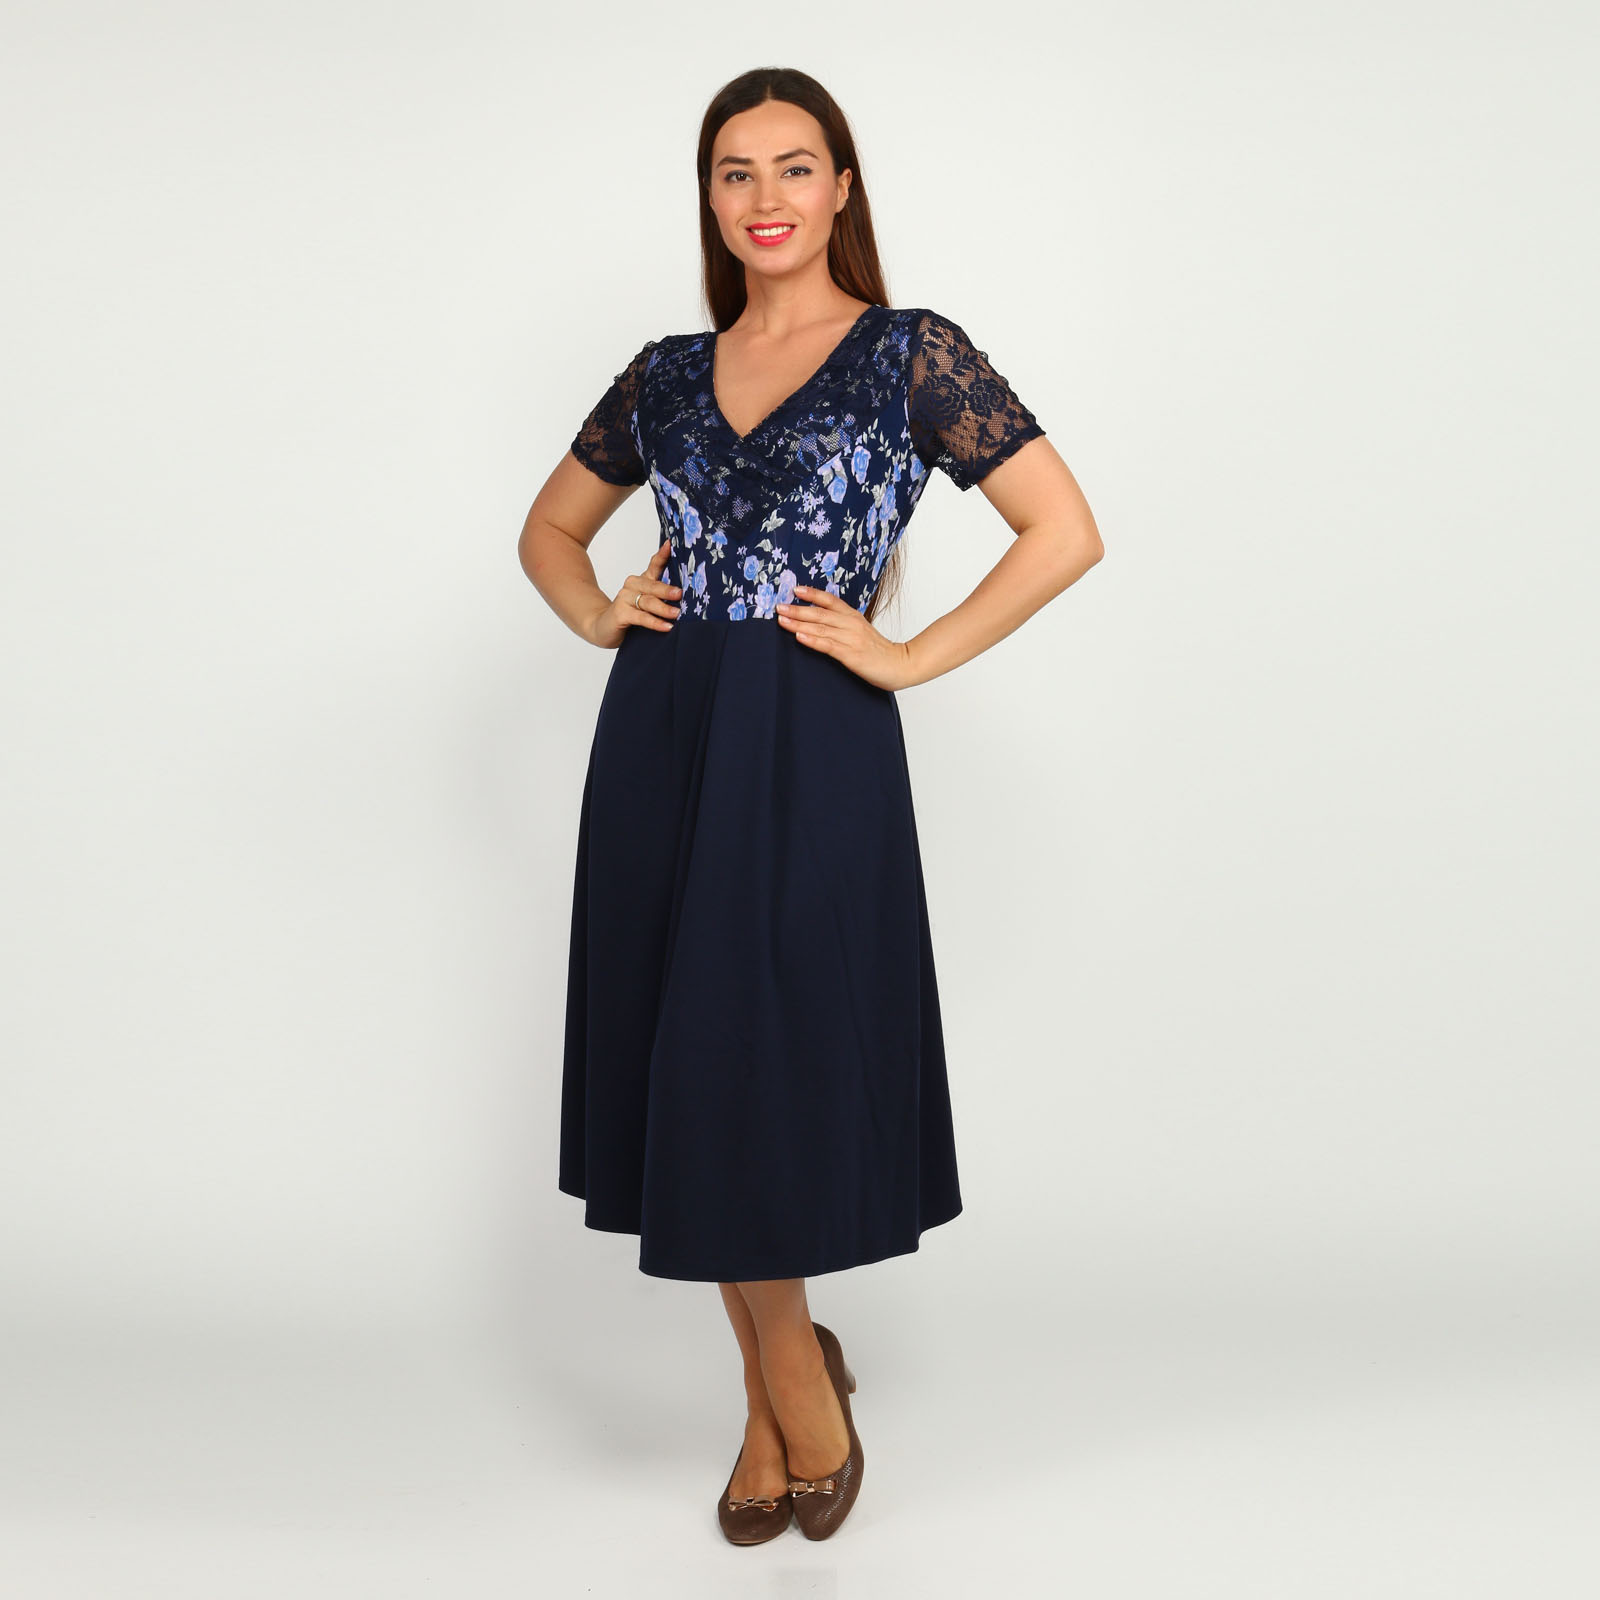 Платье с гипюровыми вставками и принтом Bianka Modeno, размер 54, цвет синий - фото 1